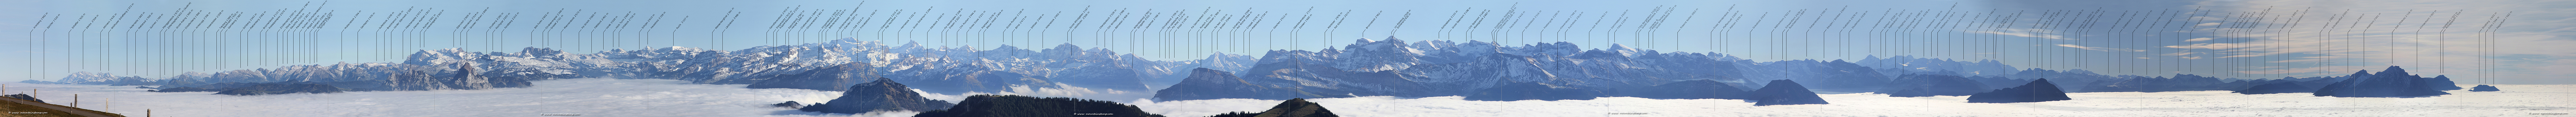 Swiss panorama Rigi Kulm Alpenpanorama Bergpanorama panorama panoramic view Swiss Alps